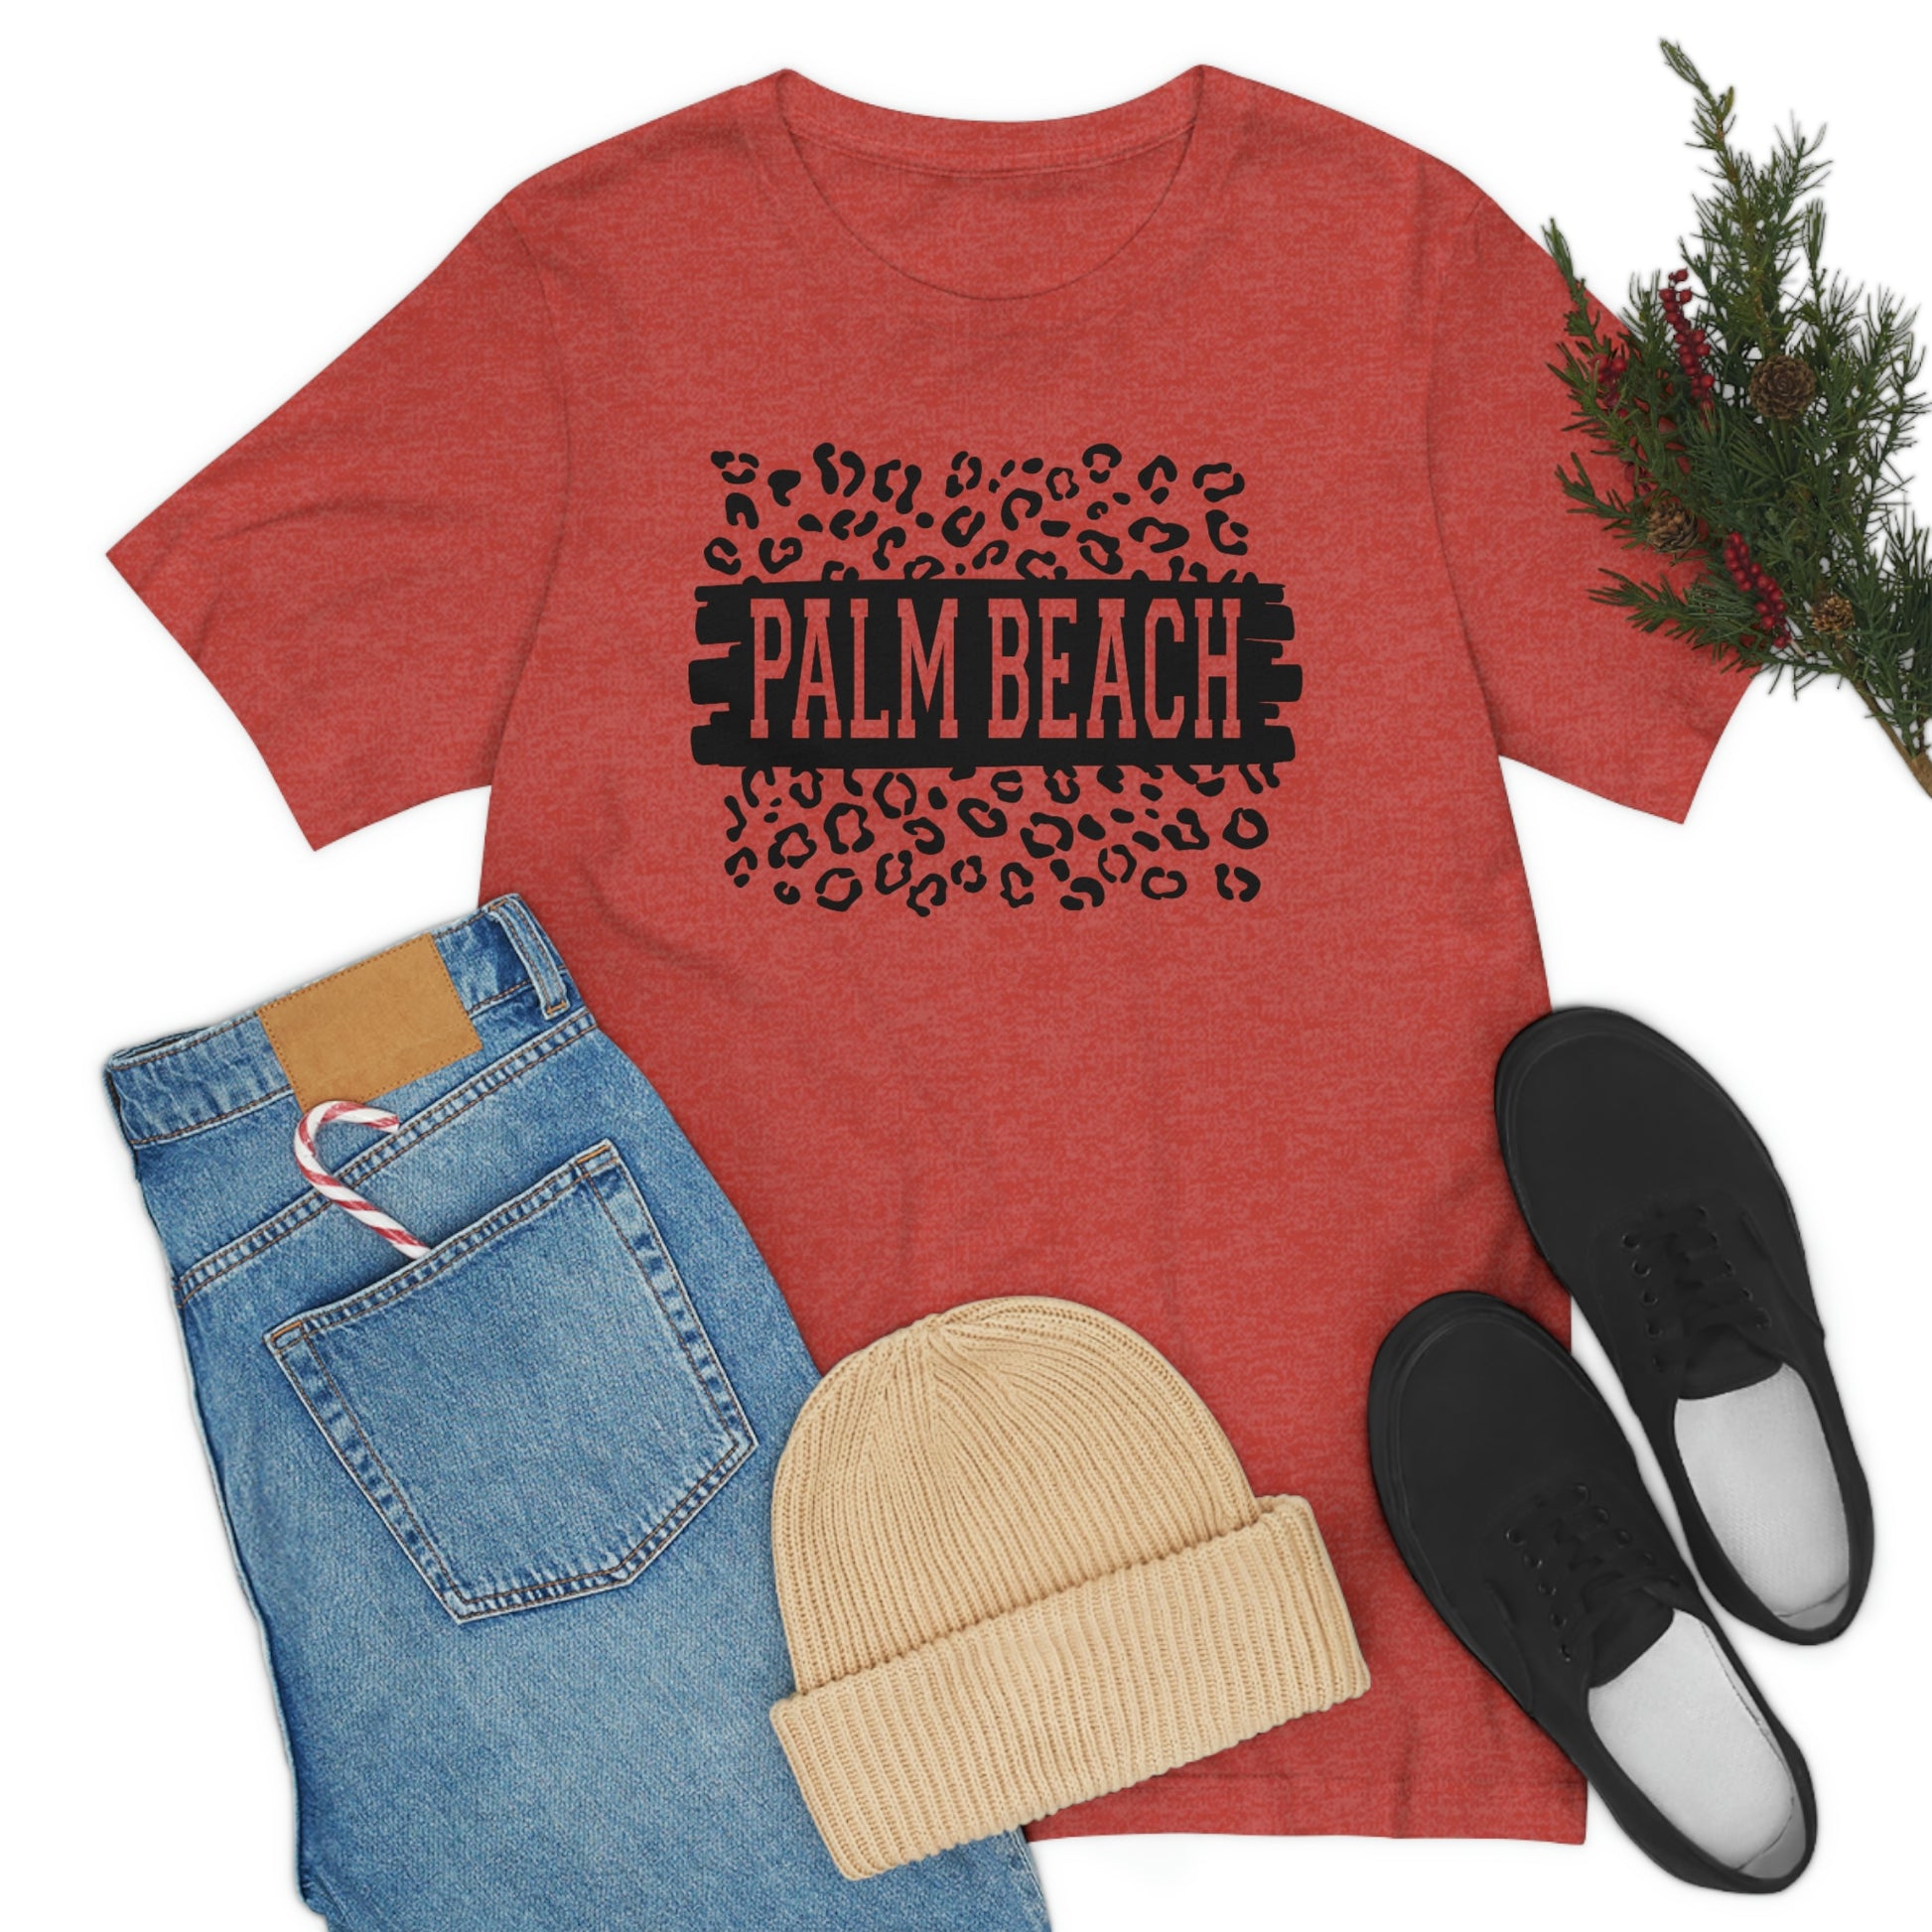 Palm Beach Leopard Print Florida Short Sleeve T-shirt